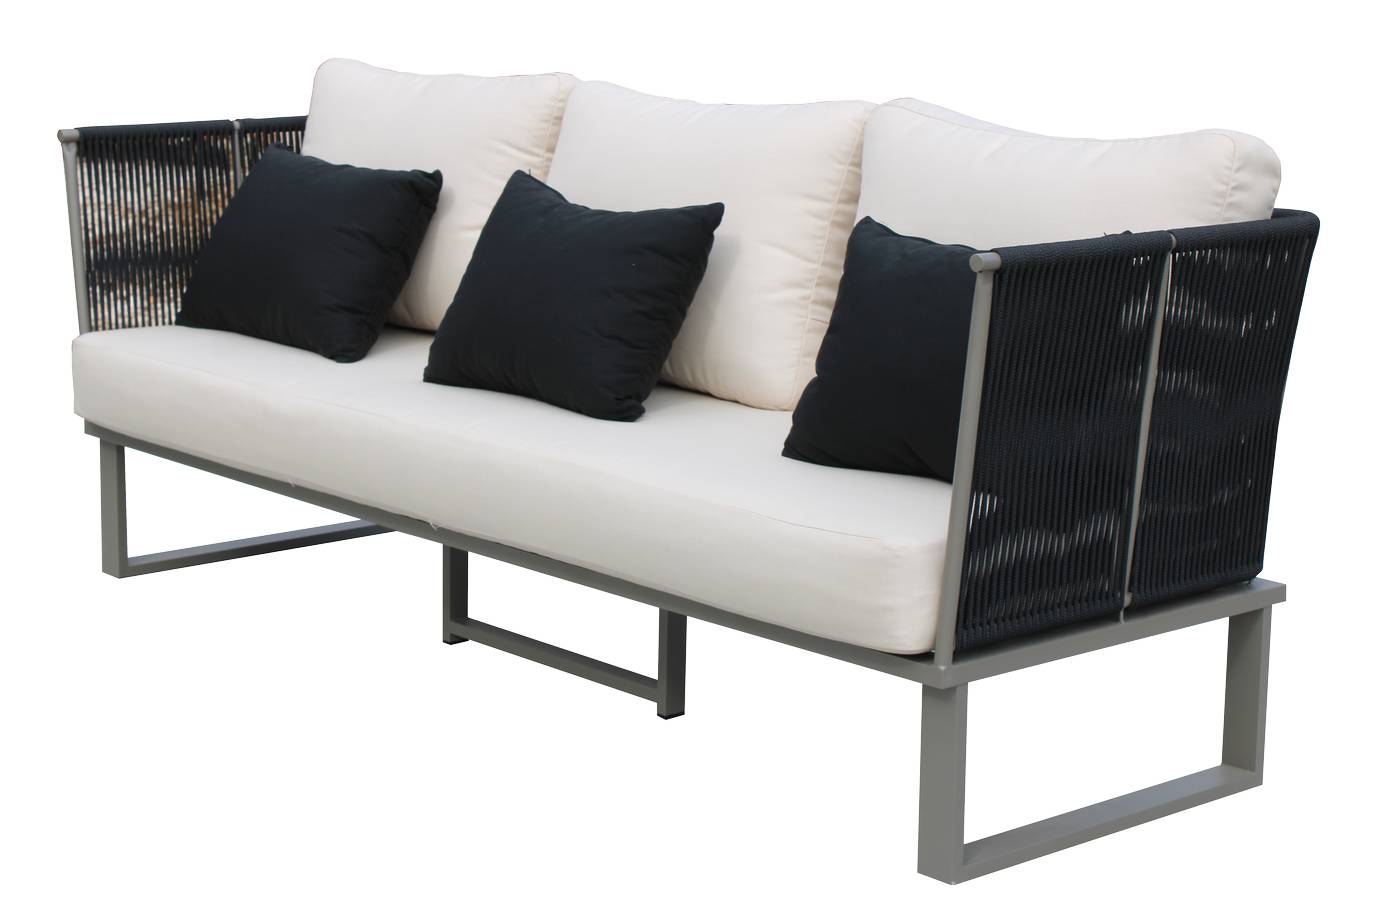 Set Cuerda Alis-10 - Conjunto aluminio y cuerda: 1 sofá de 3 plazas + 2 sillones + 1 mesa de centro + 2 taburetes. Disponible varios colores.